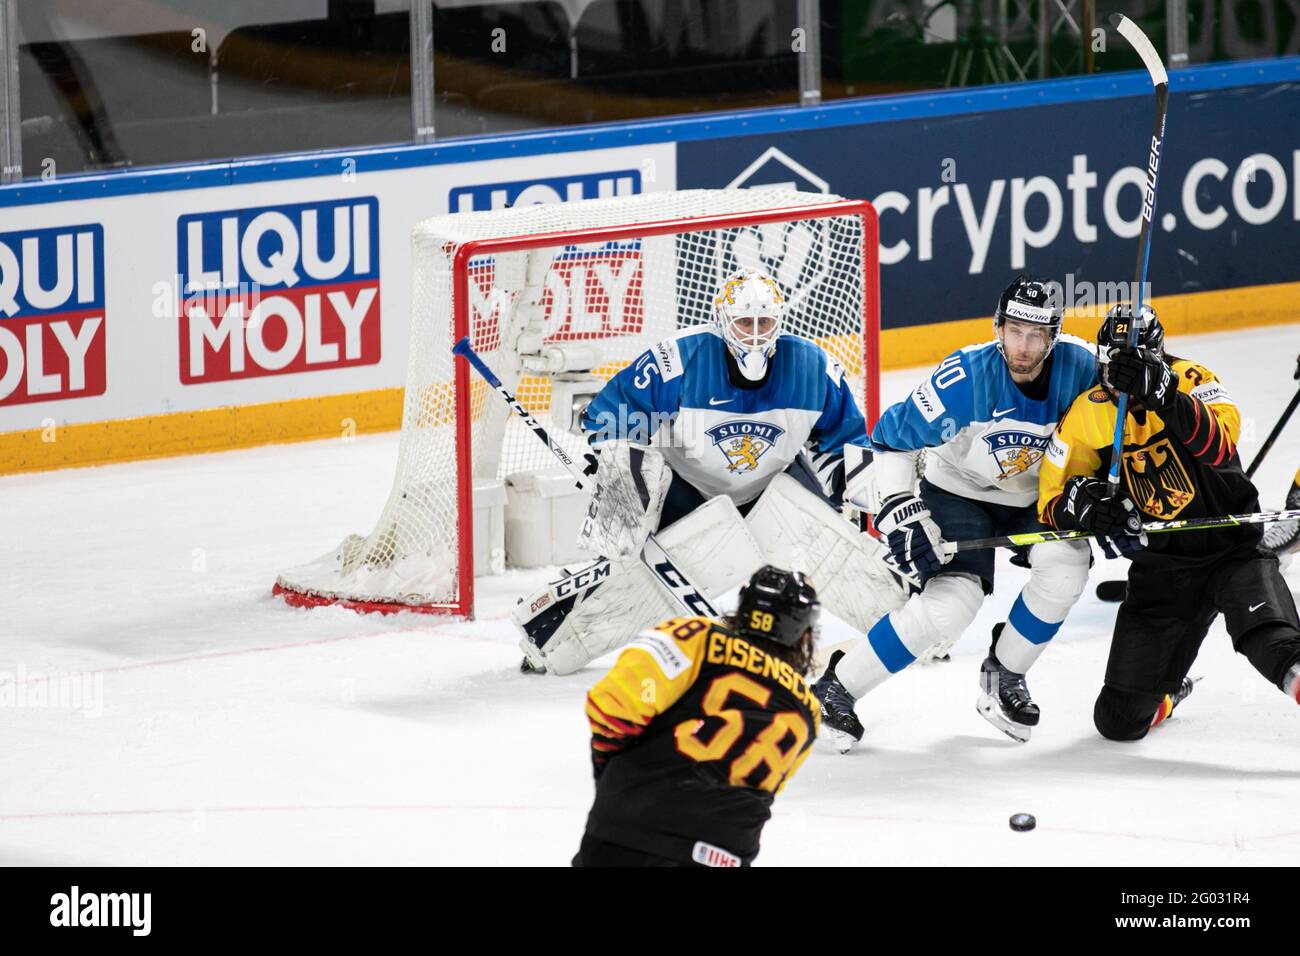 Riga, Latvia. 29th May, 2021. Germany vs Finland, Ice Hockey in Riga, Latvia, May 29 2021 Credit: Independent Photo Agency/Alamy Live News Stock Photo